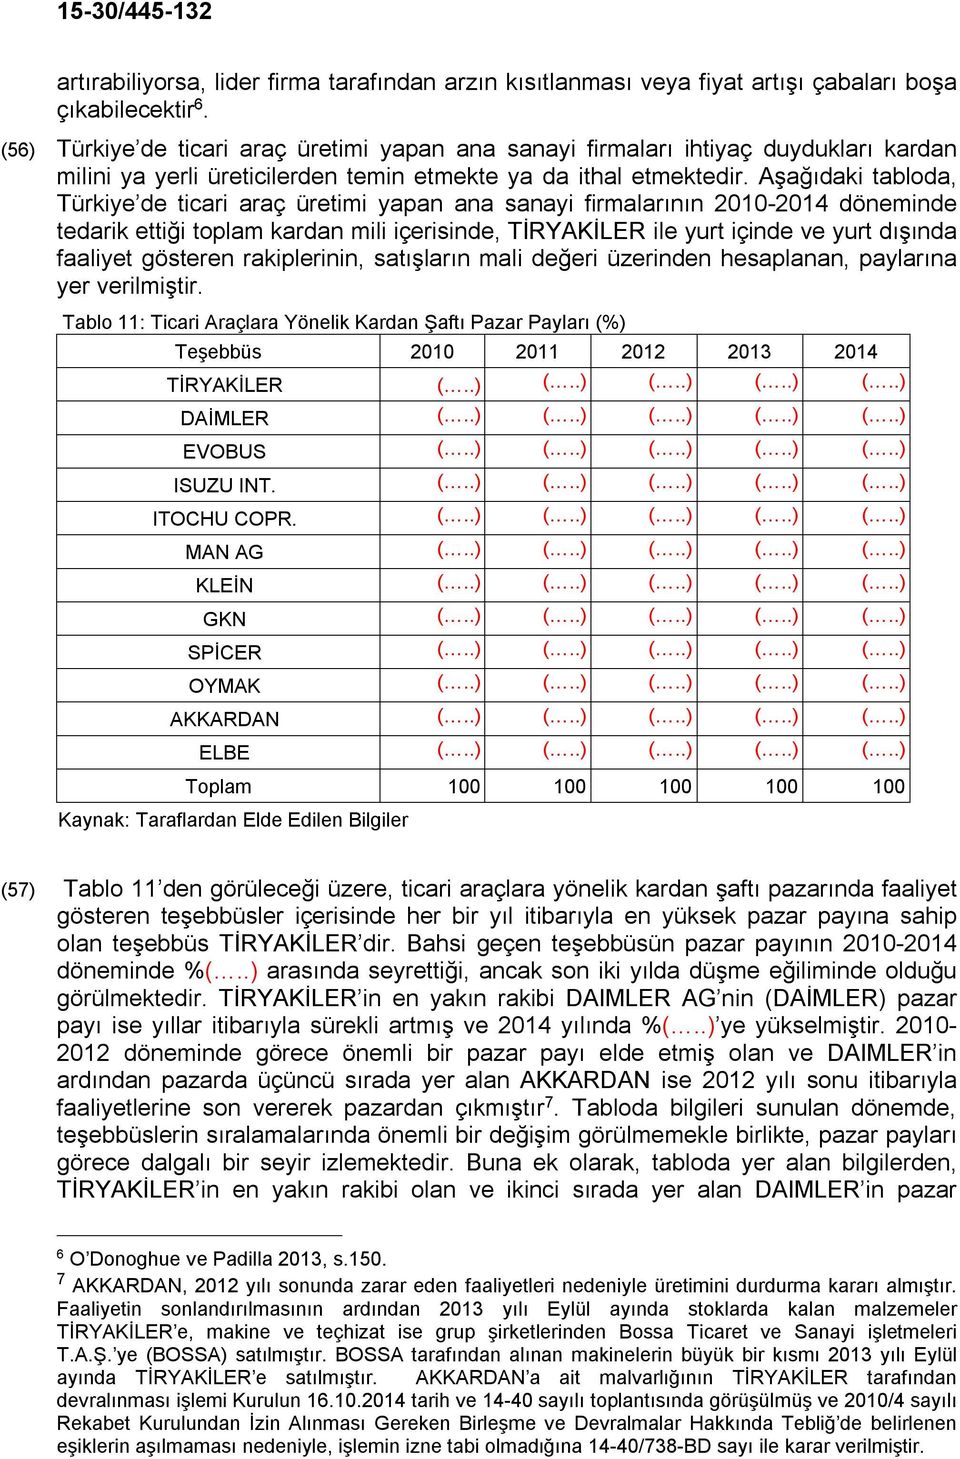 Aşağıdaki tabloda, Türkiye de ticari araç üretimi yapan ana sanayi firmalarının 2010-2014 döneminde tedarik ettiği toplam kardan mili içerisinde, TİRYAKİLER ile yurt içinde ve yurt dışında faaliyet